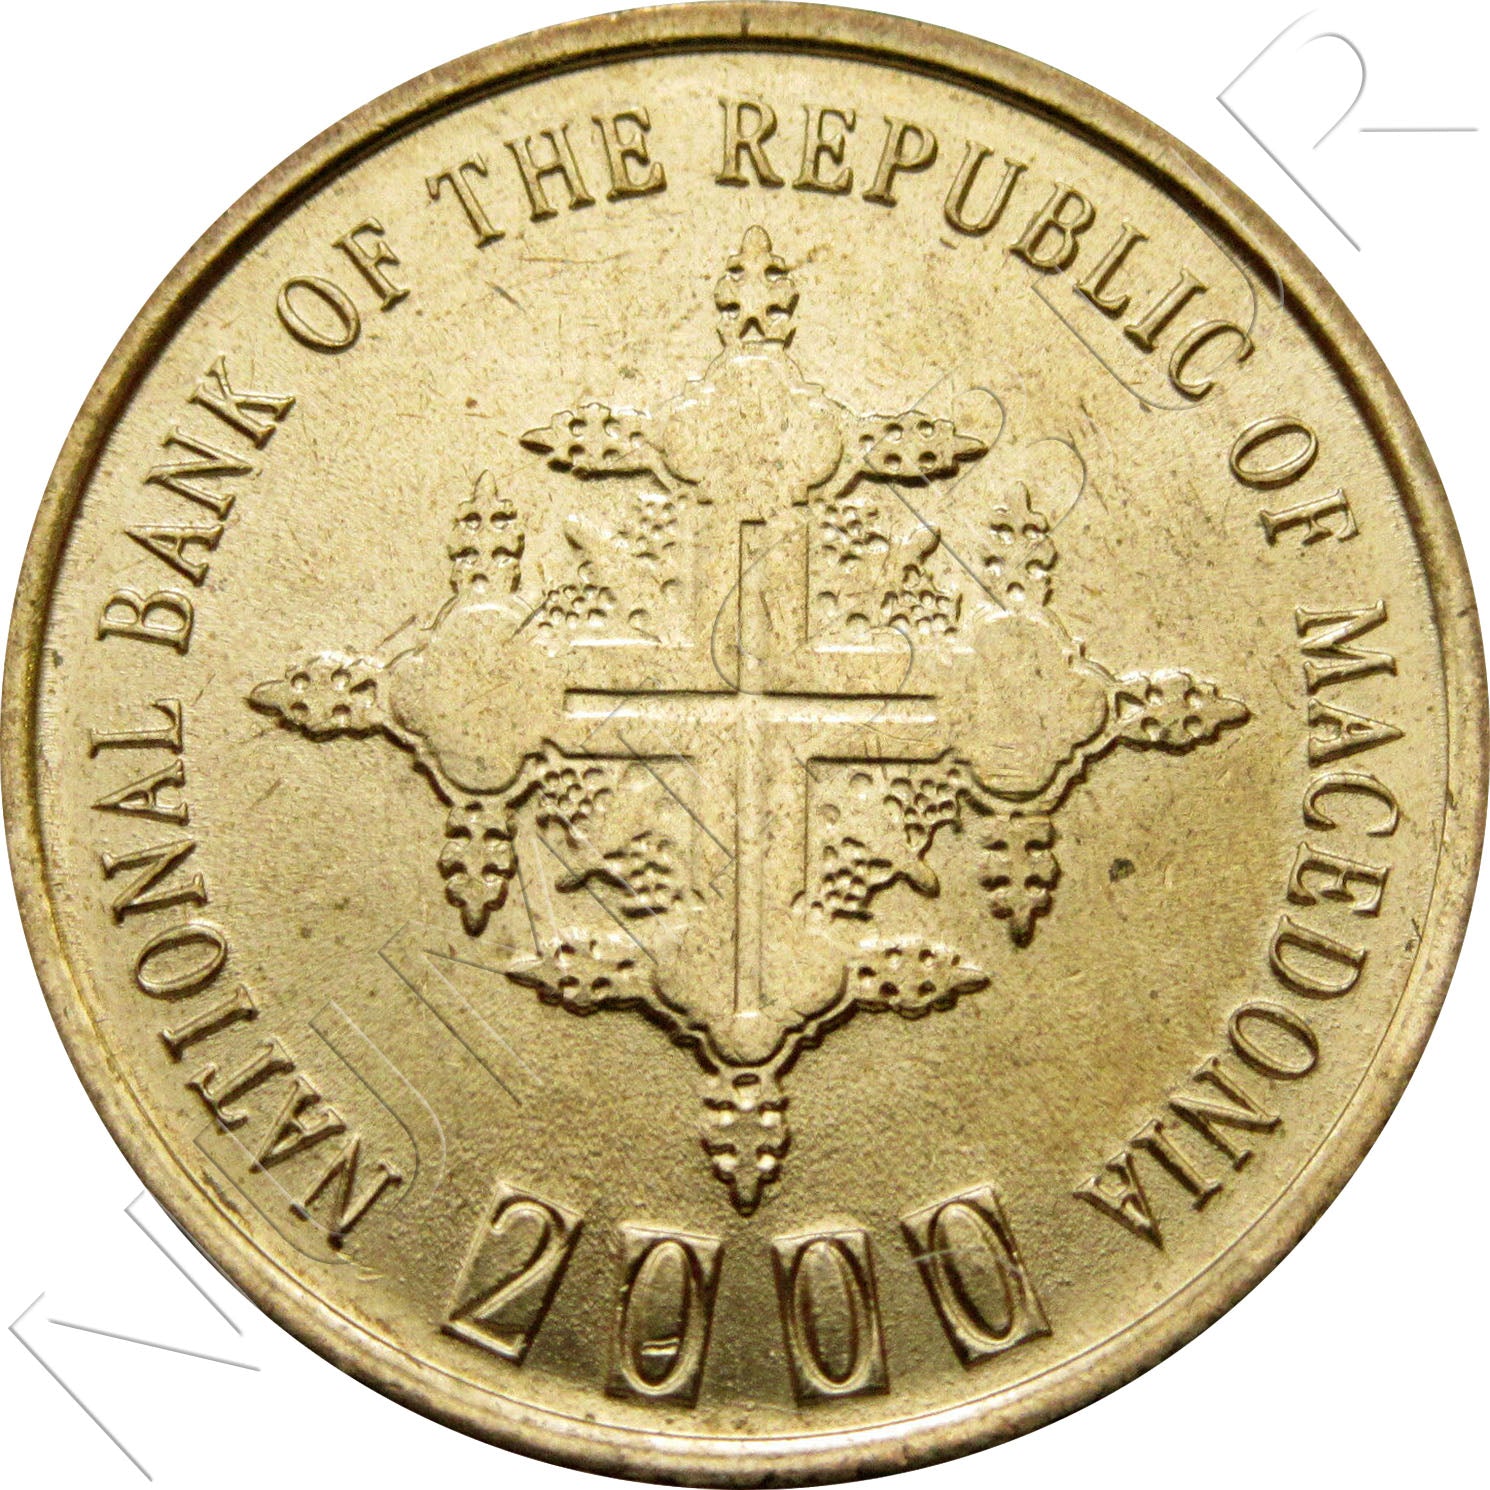 1 dinar MACEDONIA 2000 - Mule